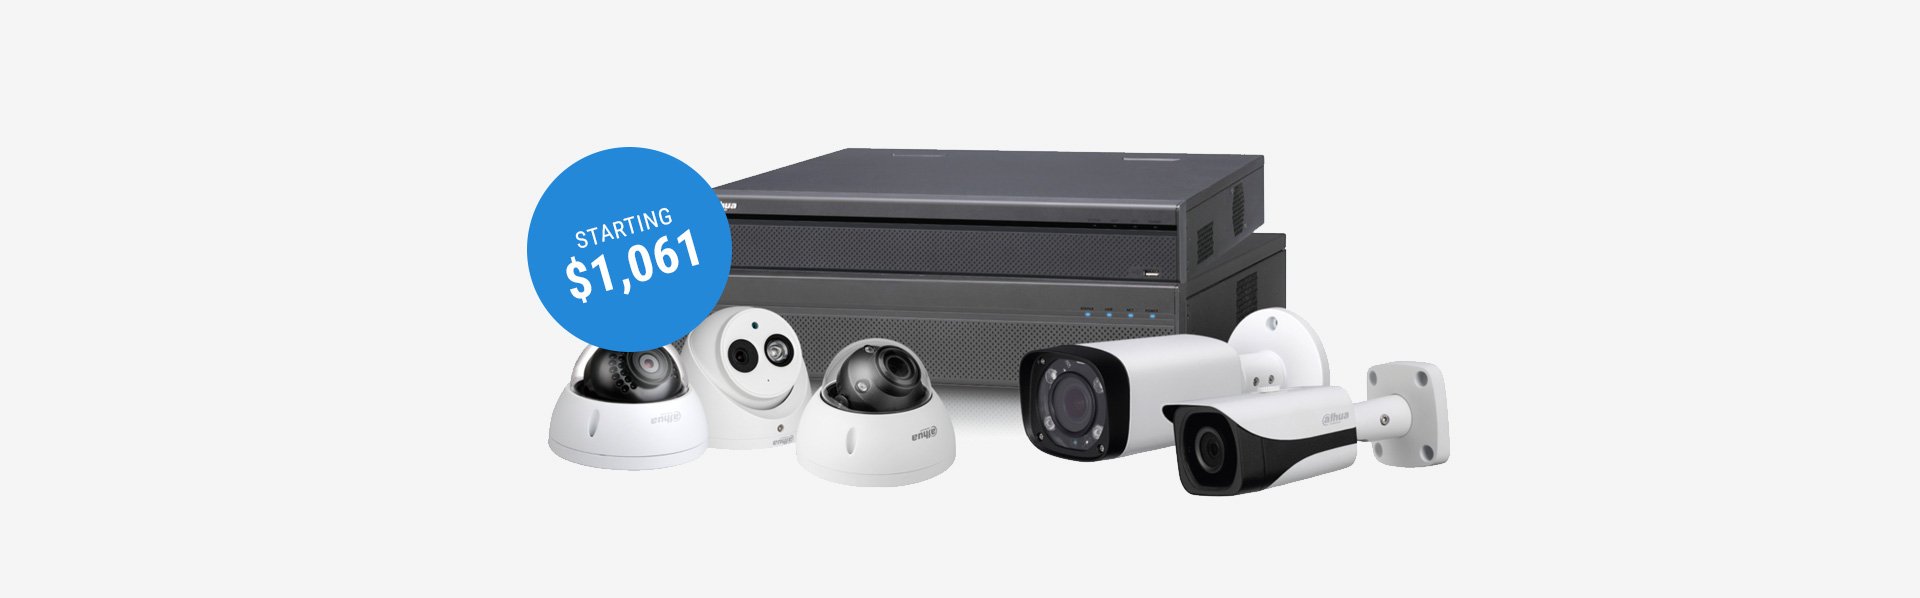 Dahua CCTV Kit